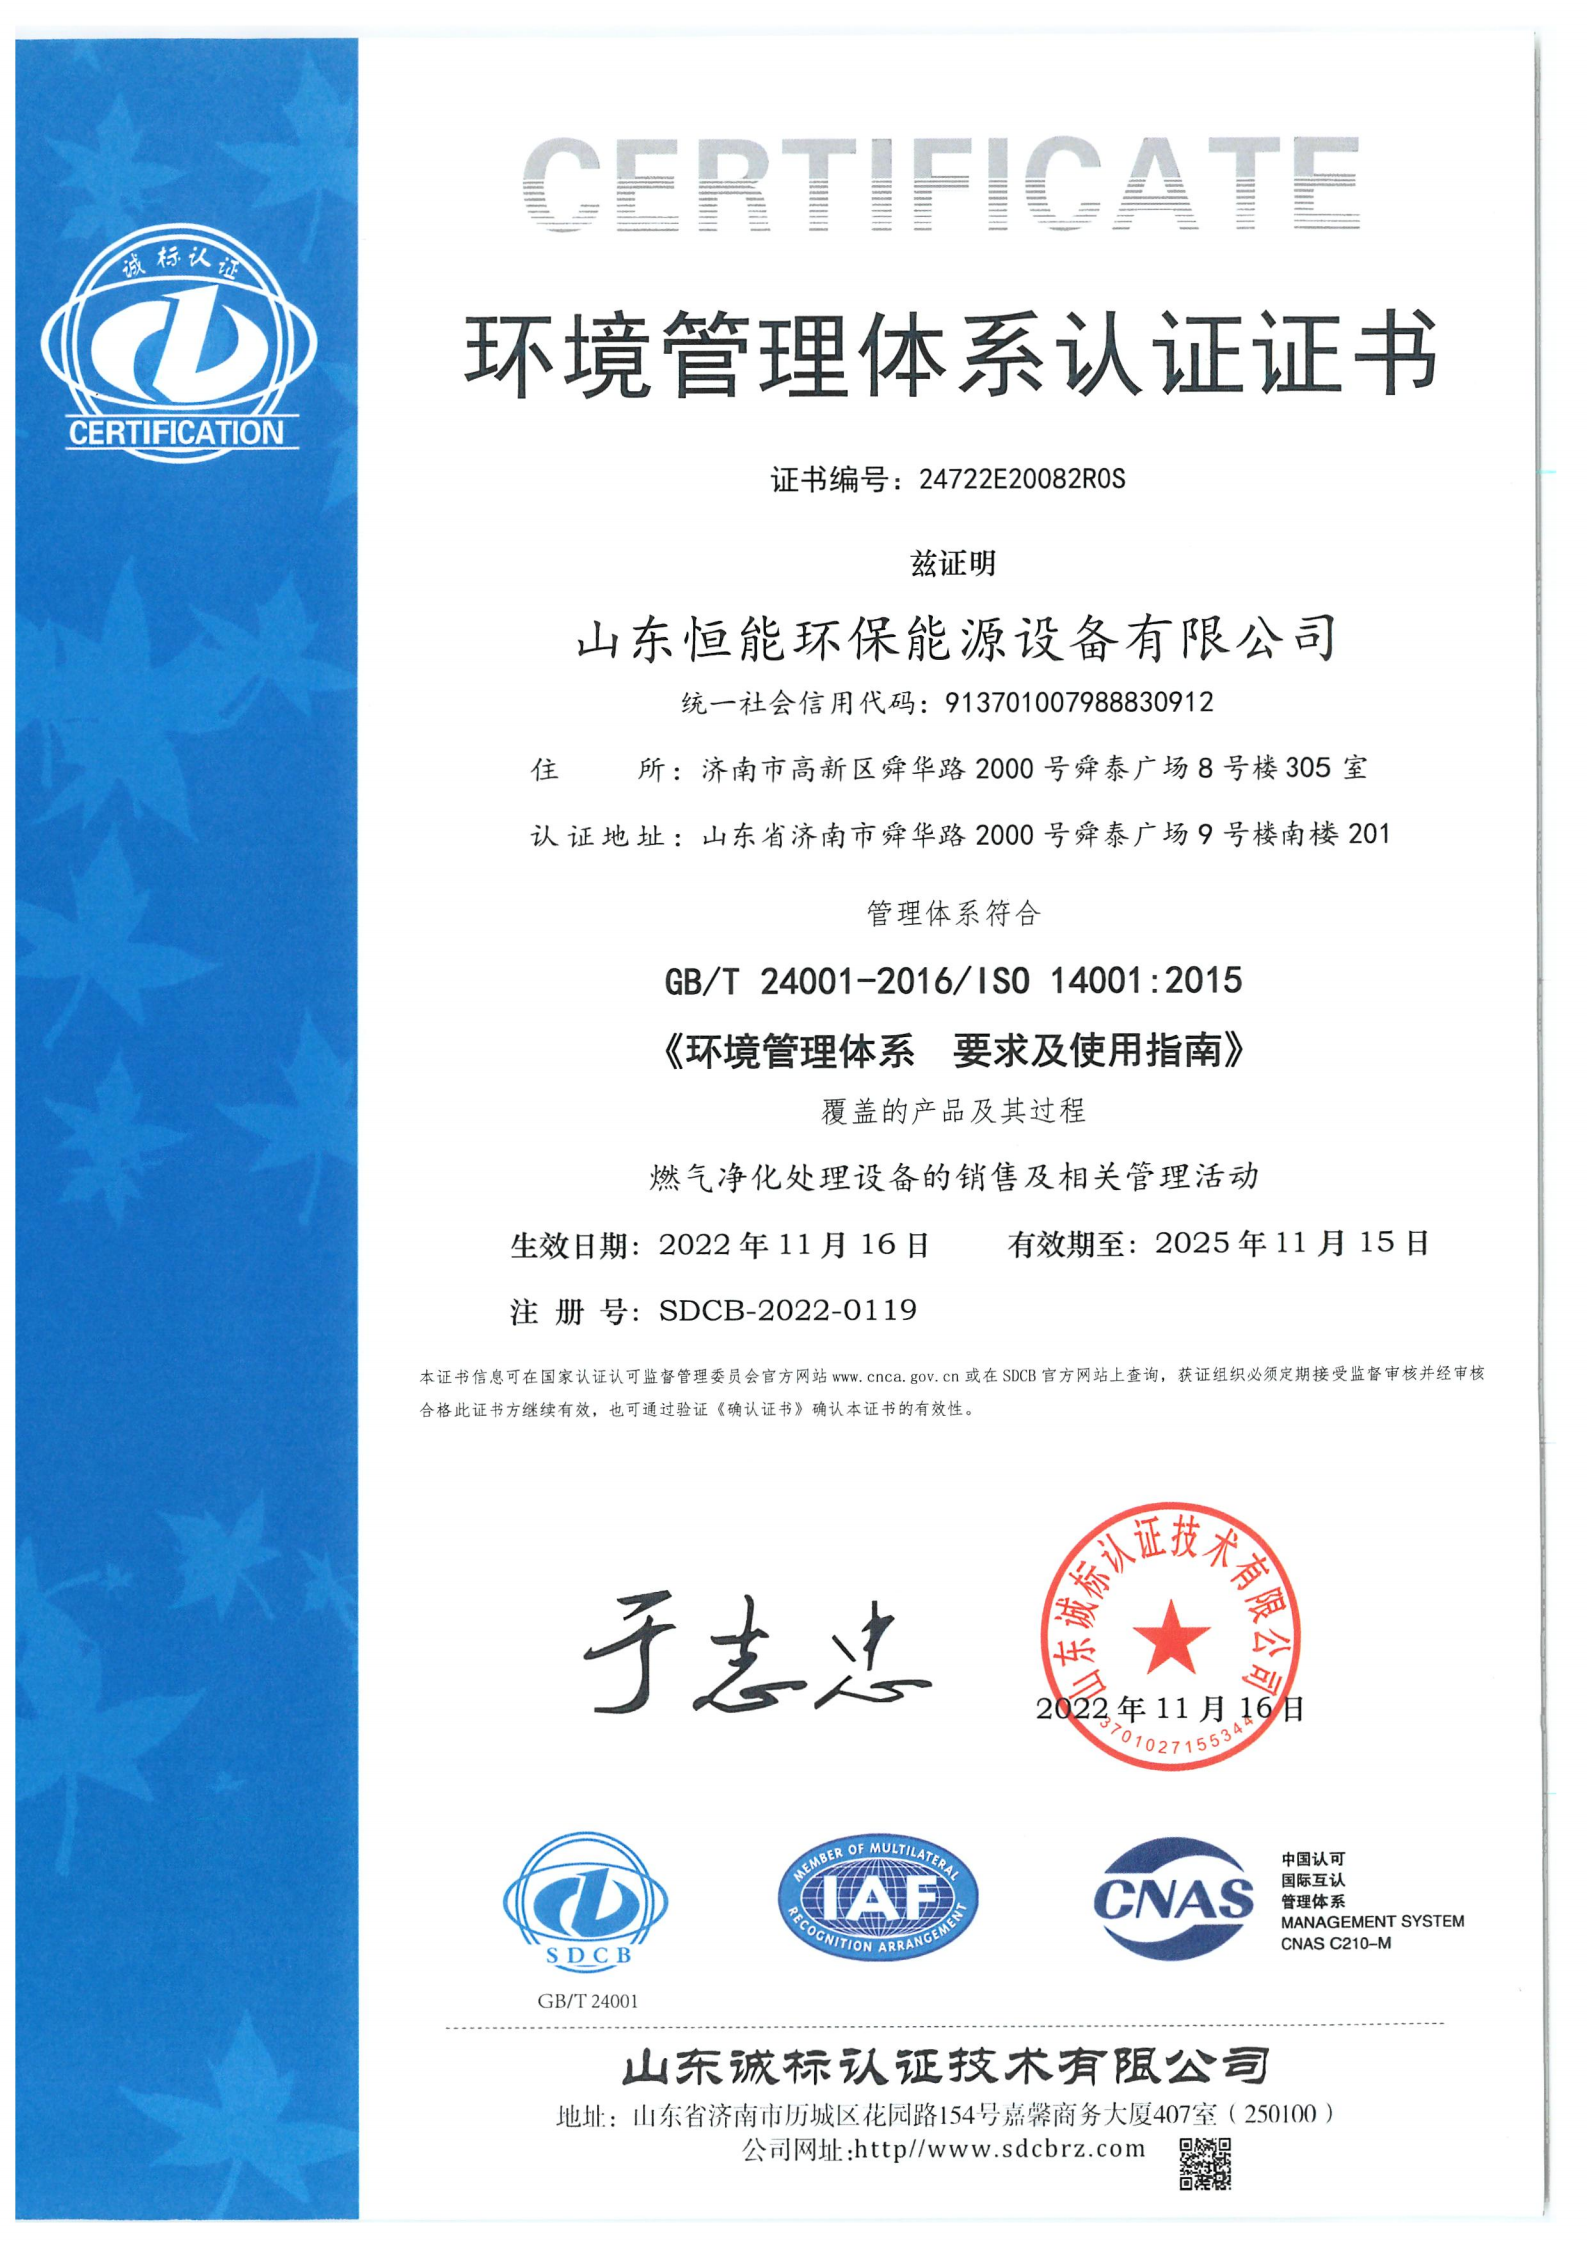 恒能环境管理体系证书-中文_00